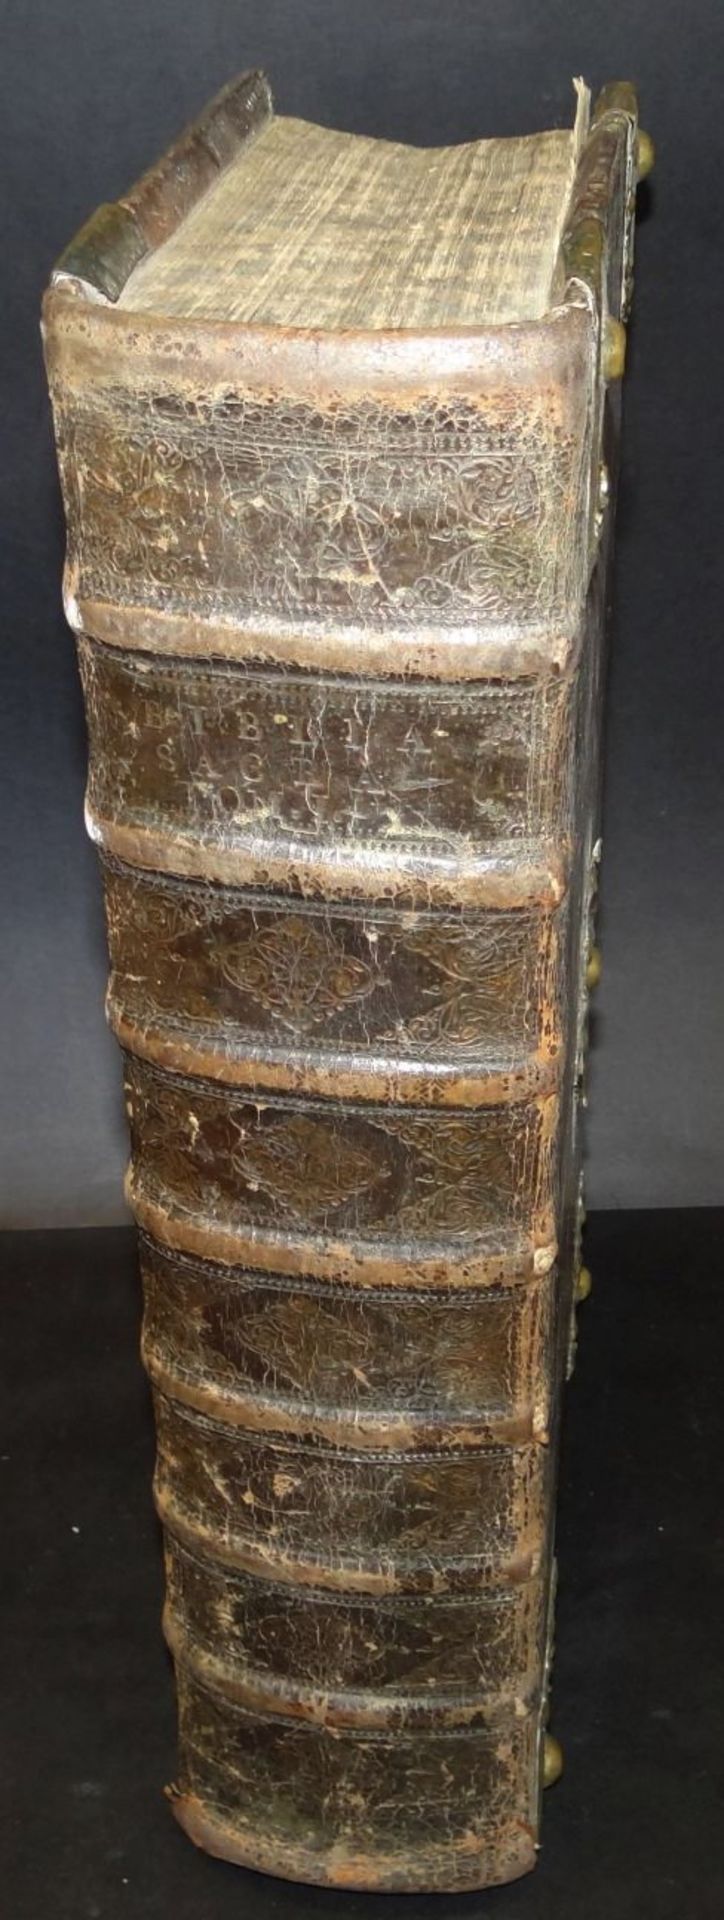 Martin Luther "Biblia-oder die ganze hl. Schrift" Tübingen 1729, Gebrauchsspuren, Einband der Zeit - Bild 2 aus 10